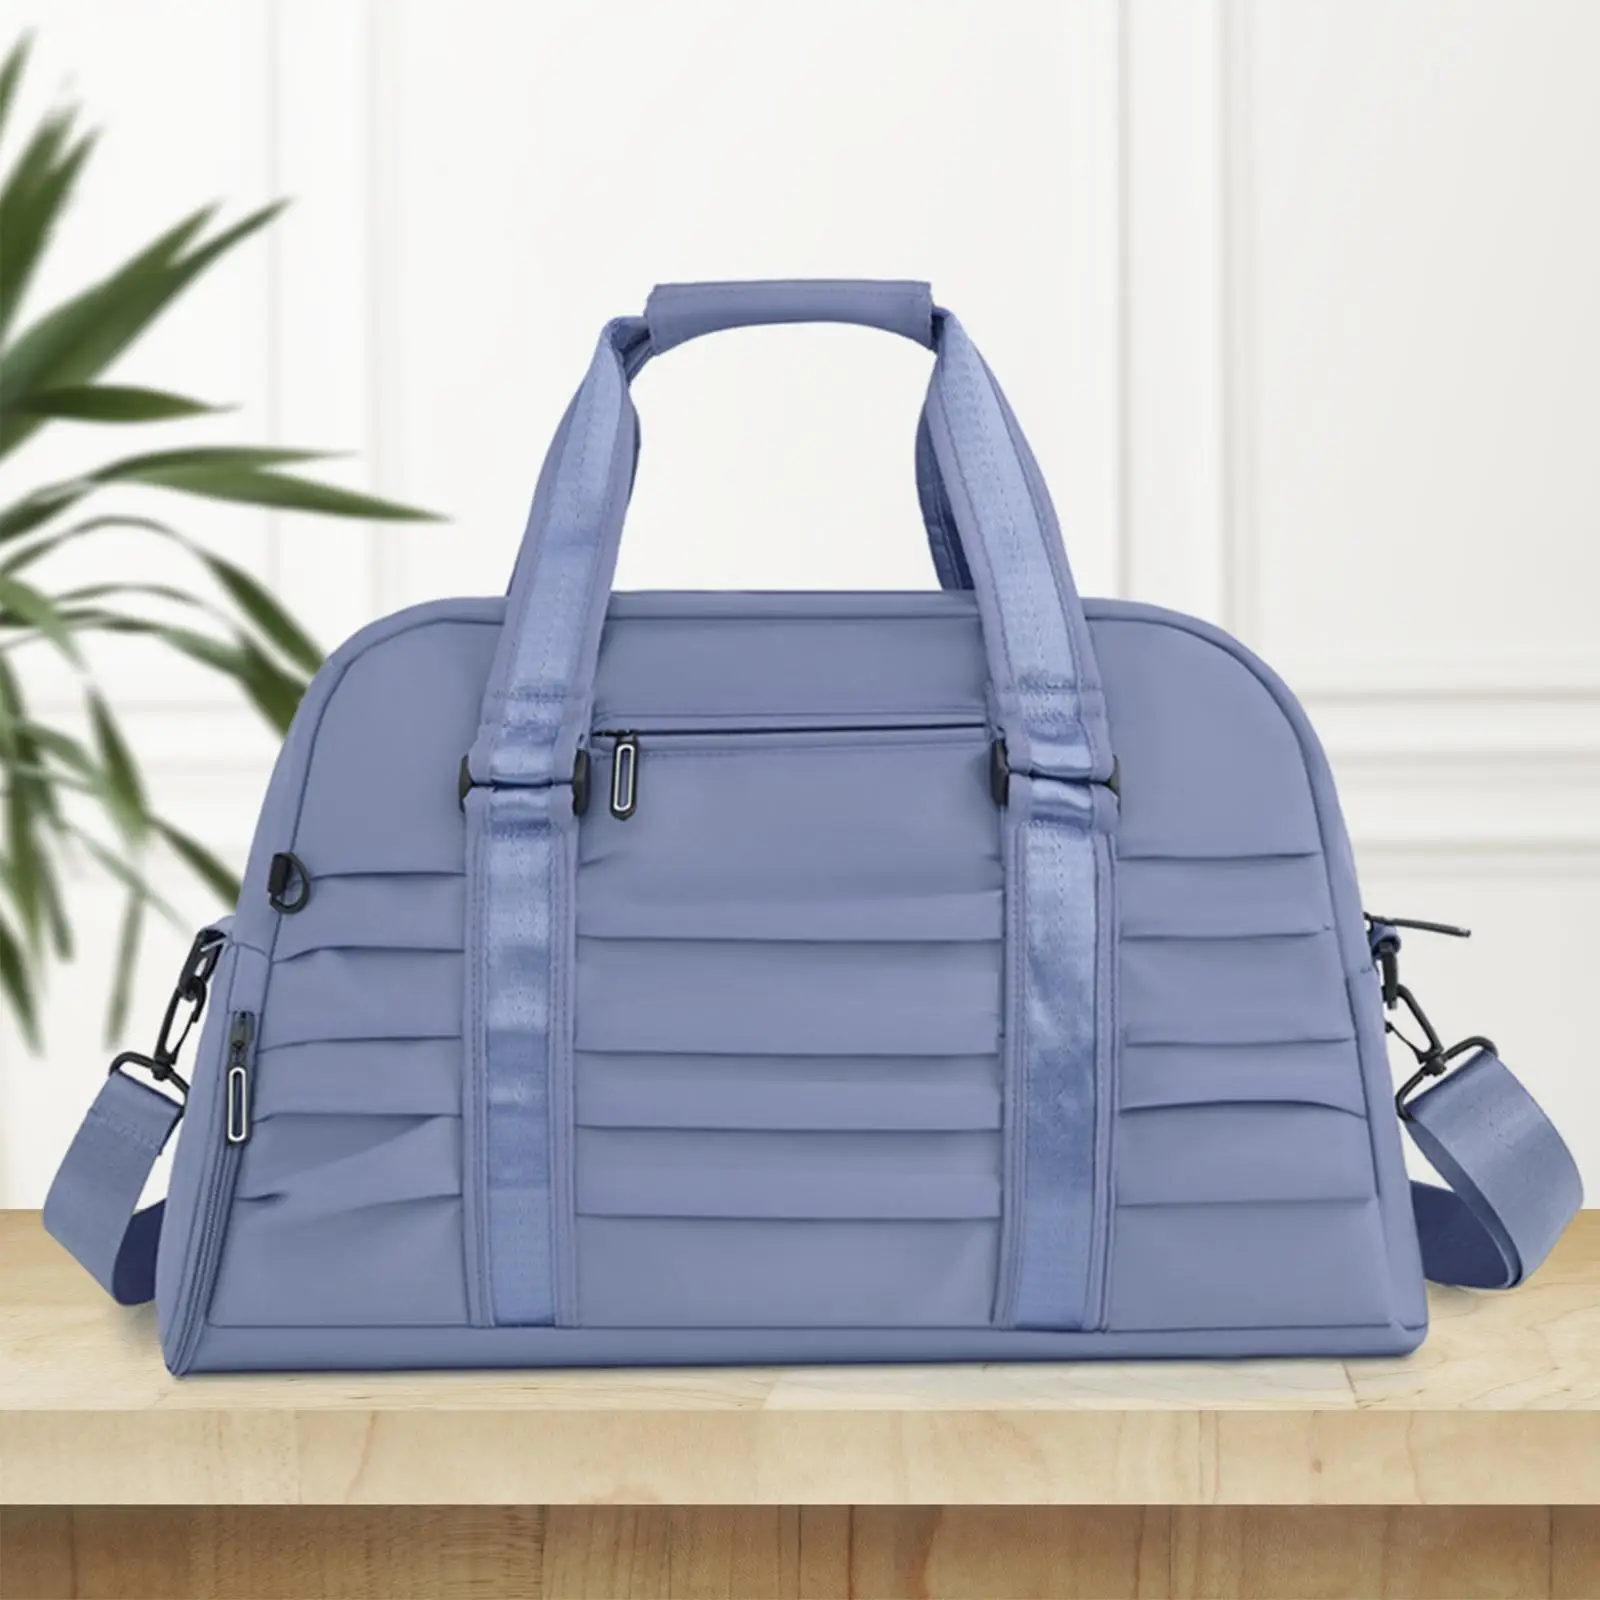 Travel Duffle Bag Adjustable Strap Overnight Bag Shoulder Handbag Tote Multipurpose Sports Gym Bag for Golf Fitness Outdoor